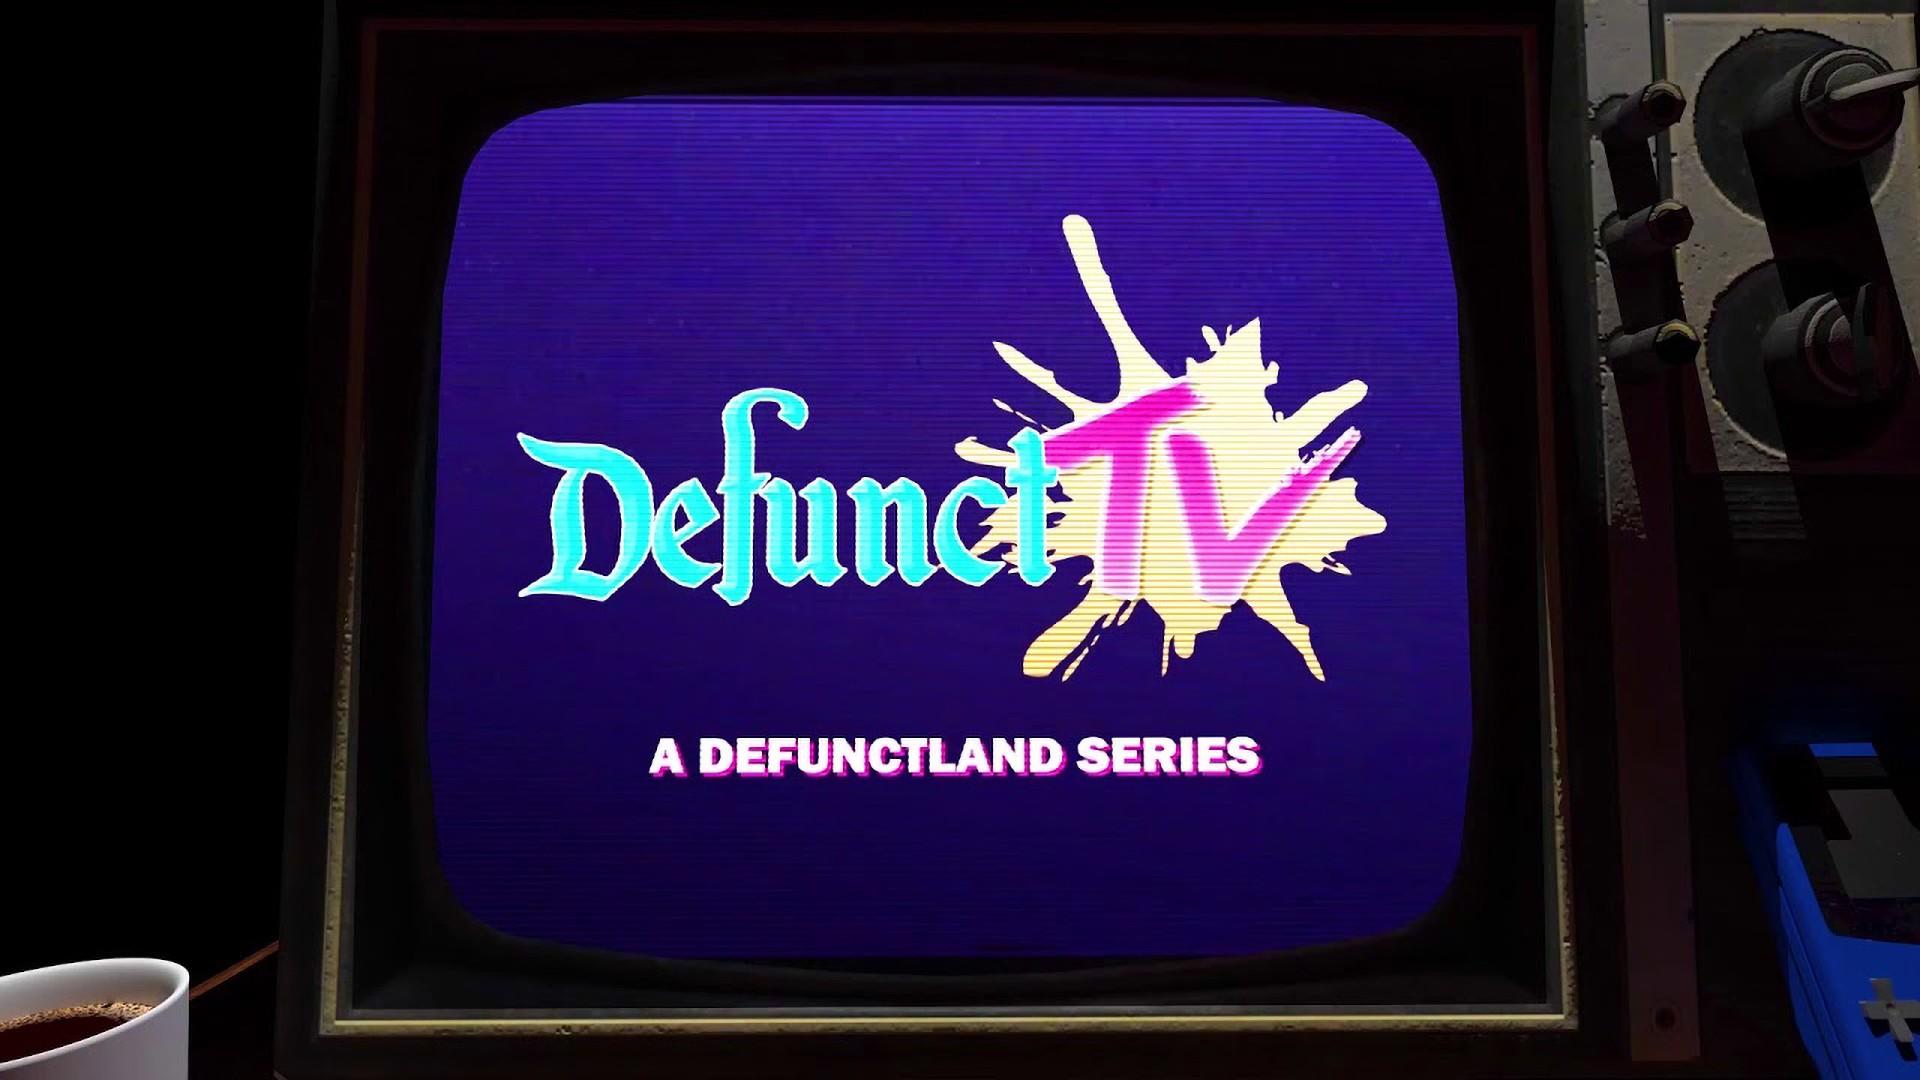 DefunctTV